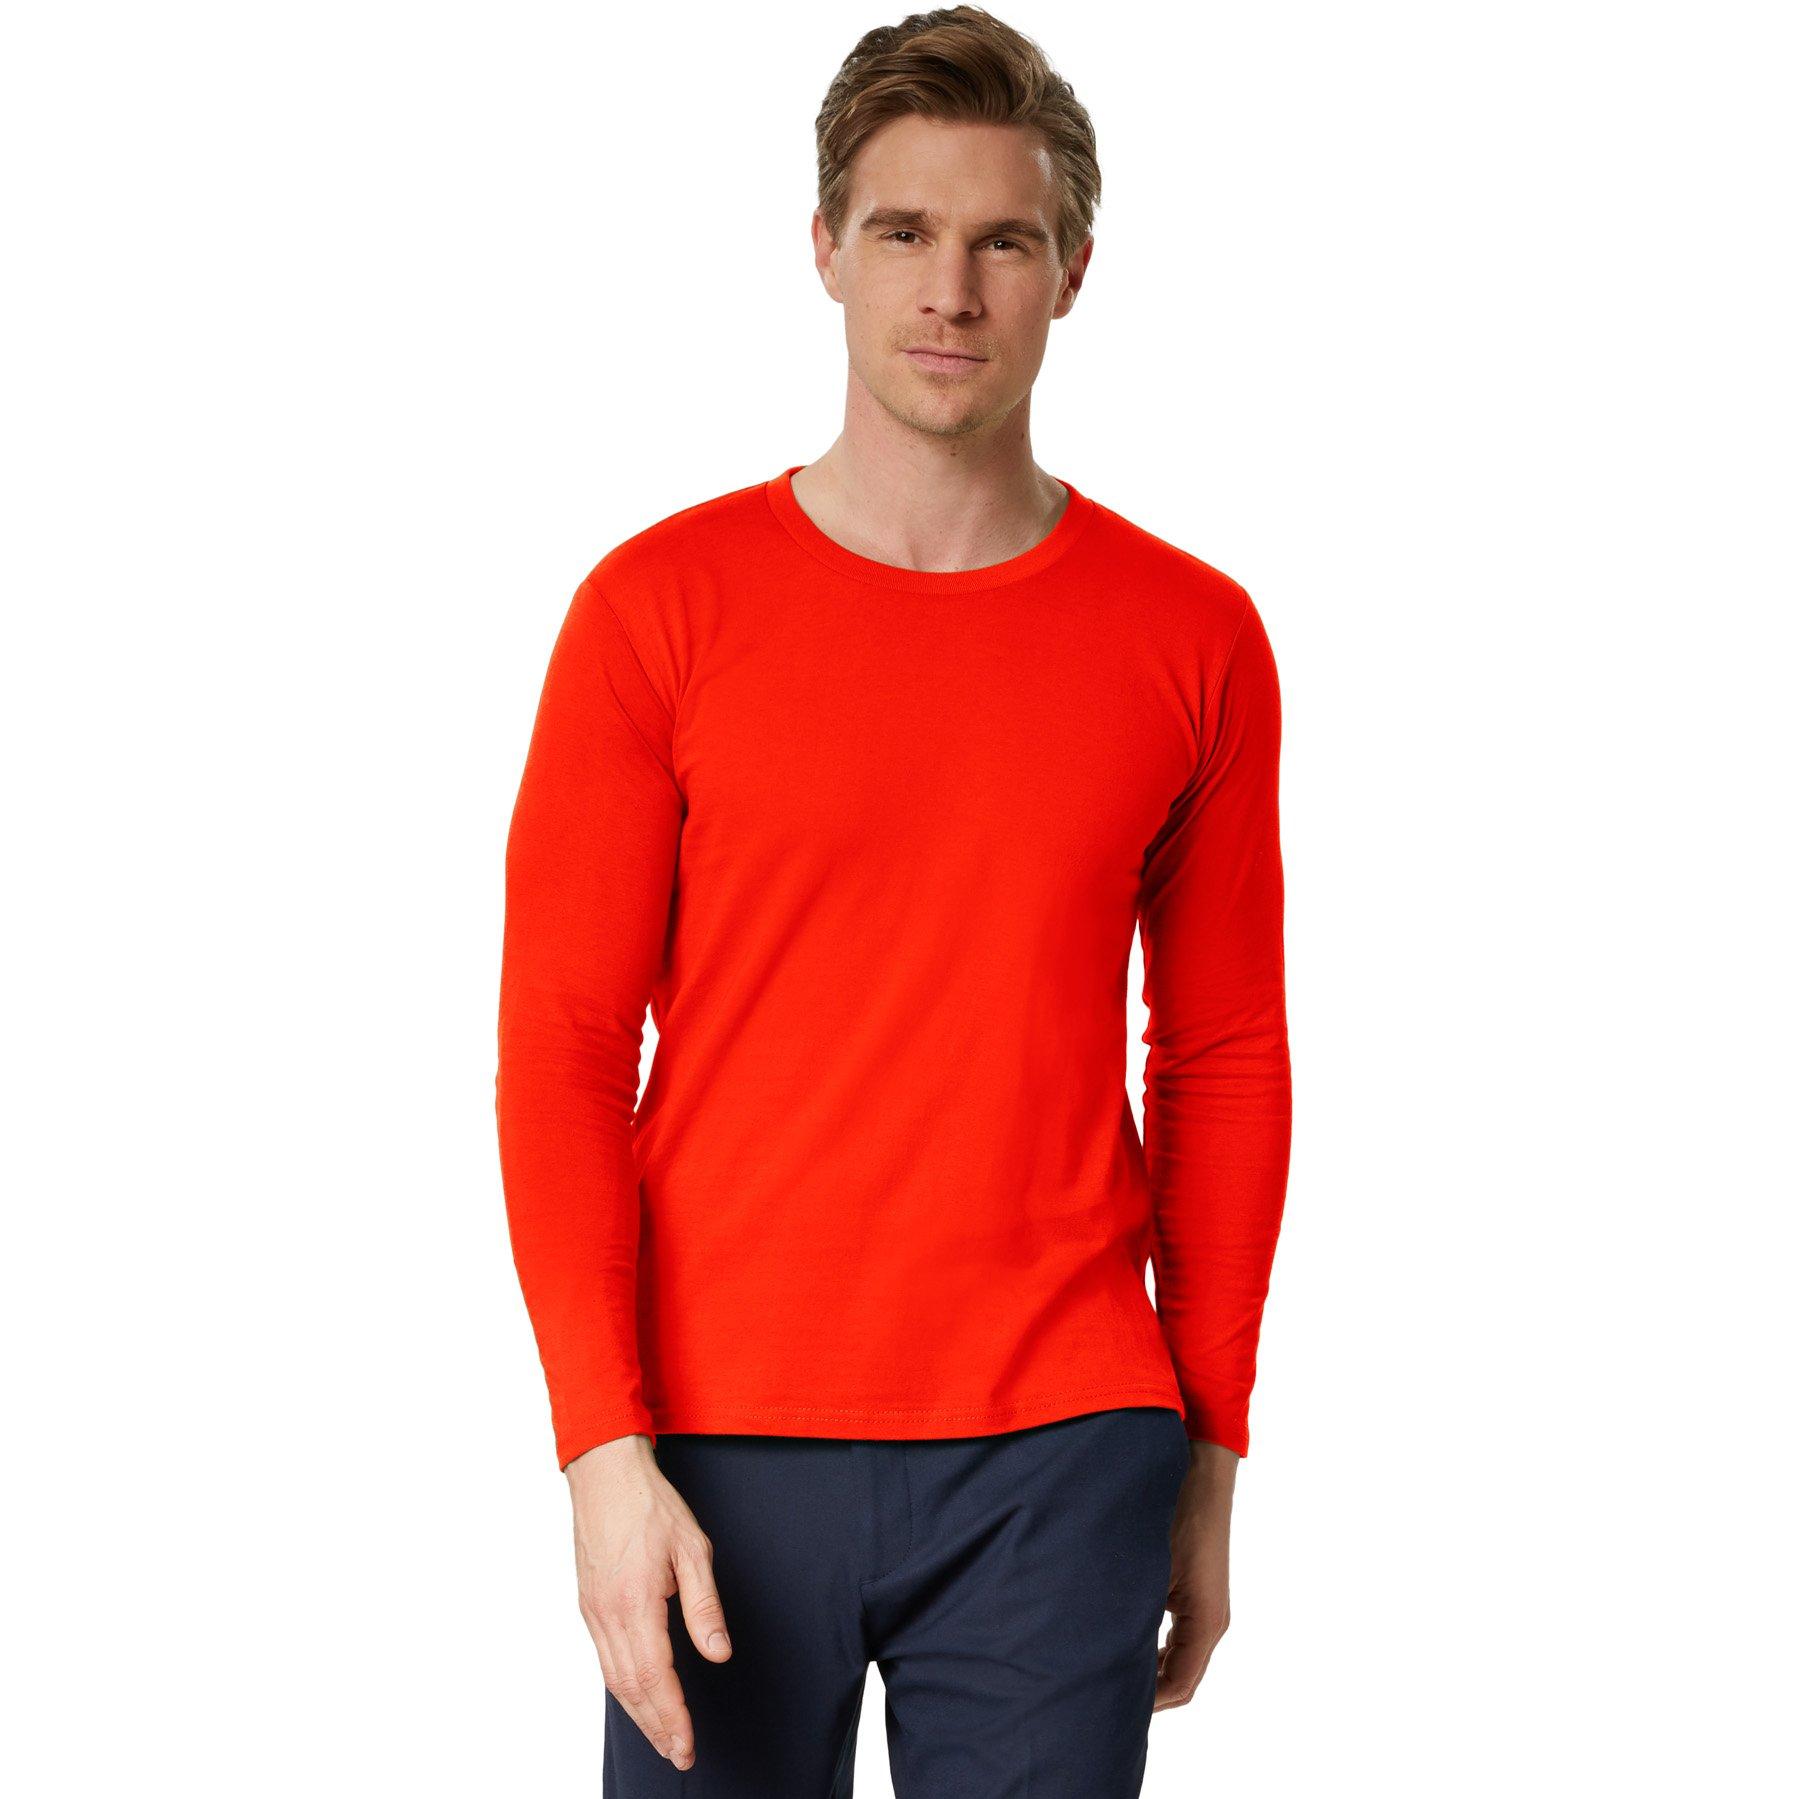 Langarm-shirt Männer Herren Rot XL von Tectake